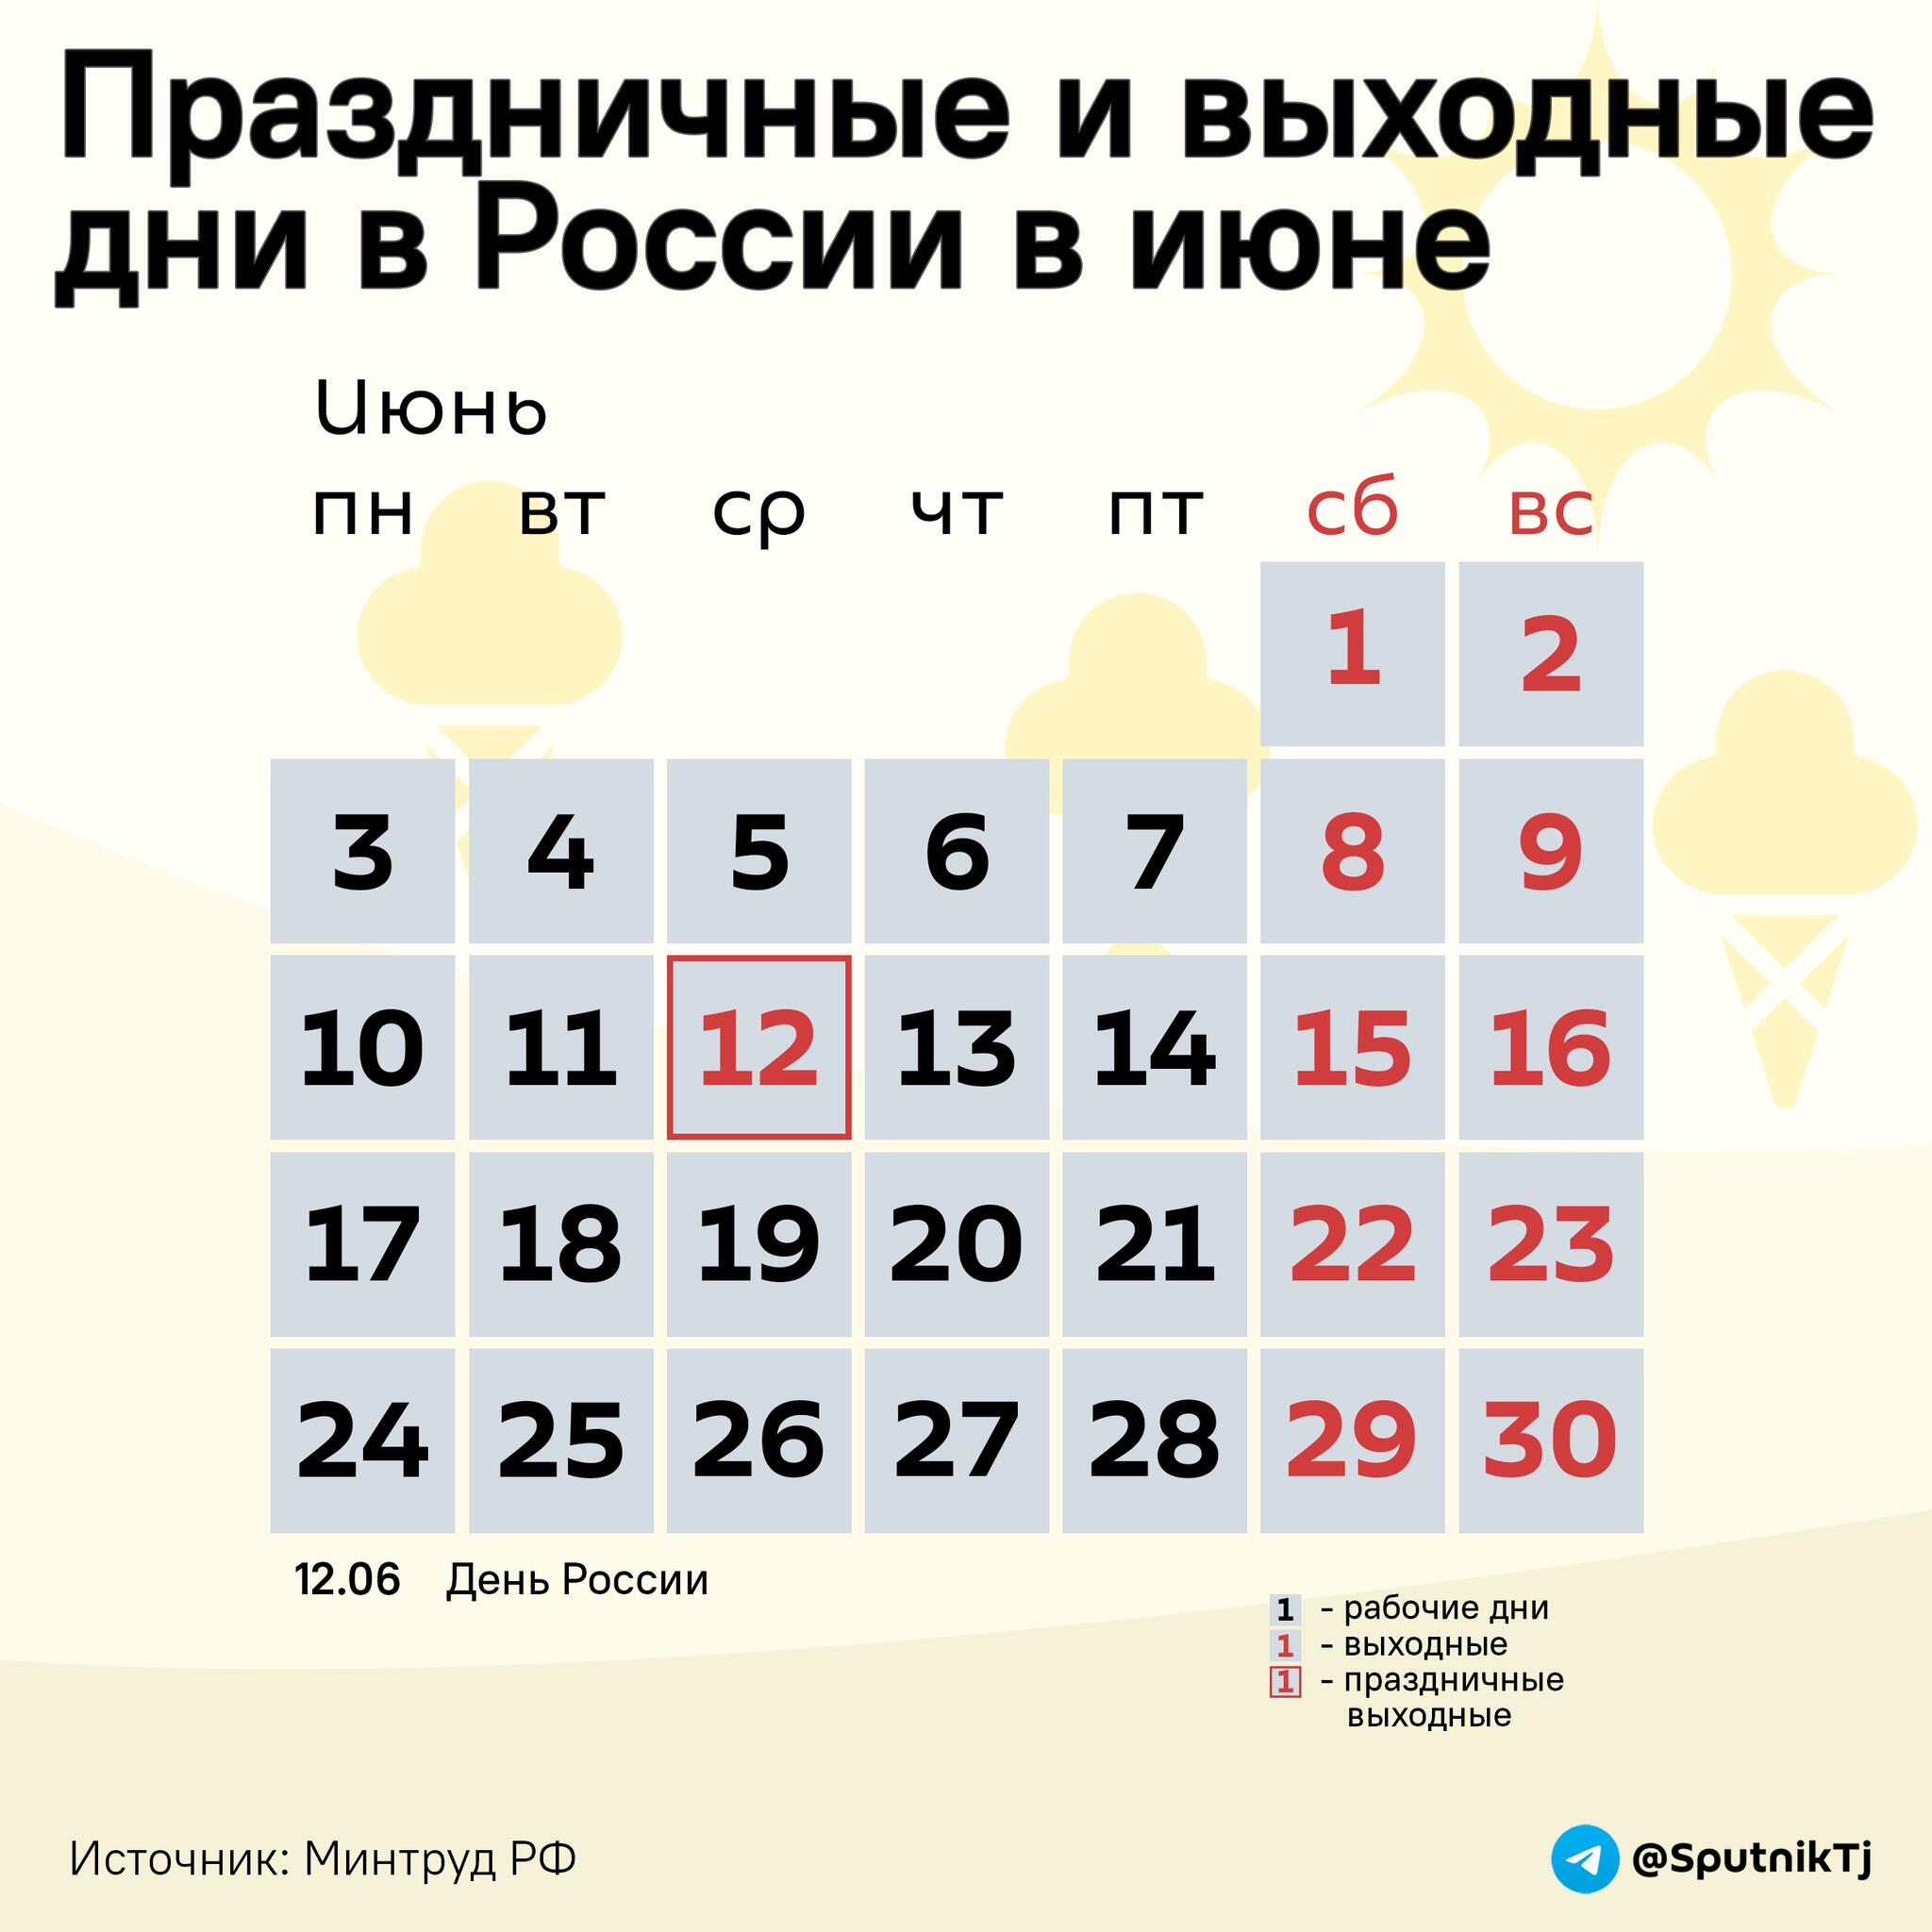 Праздничные и выходные дни в России в июне - Sputnik Таджикистан